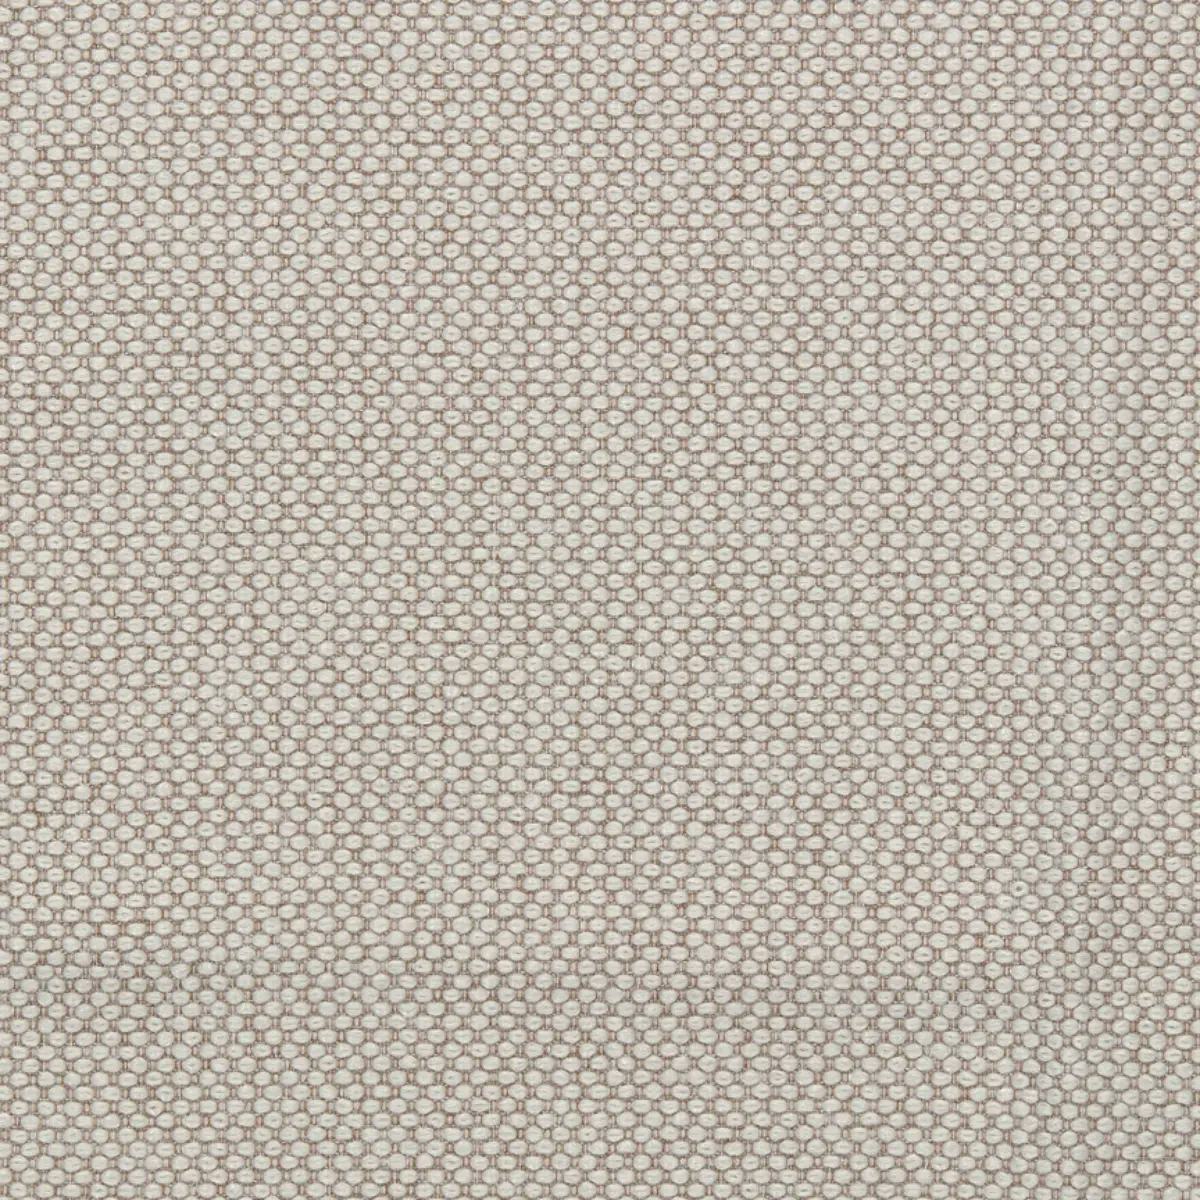 Fabric sample Merit 0029 brown